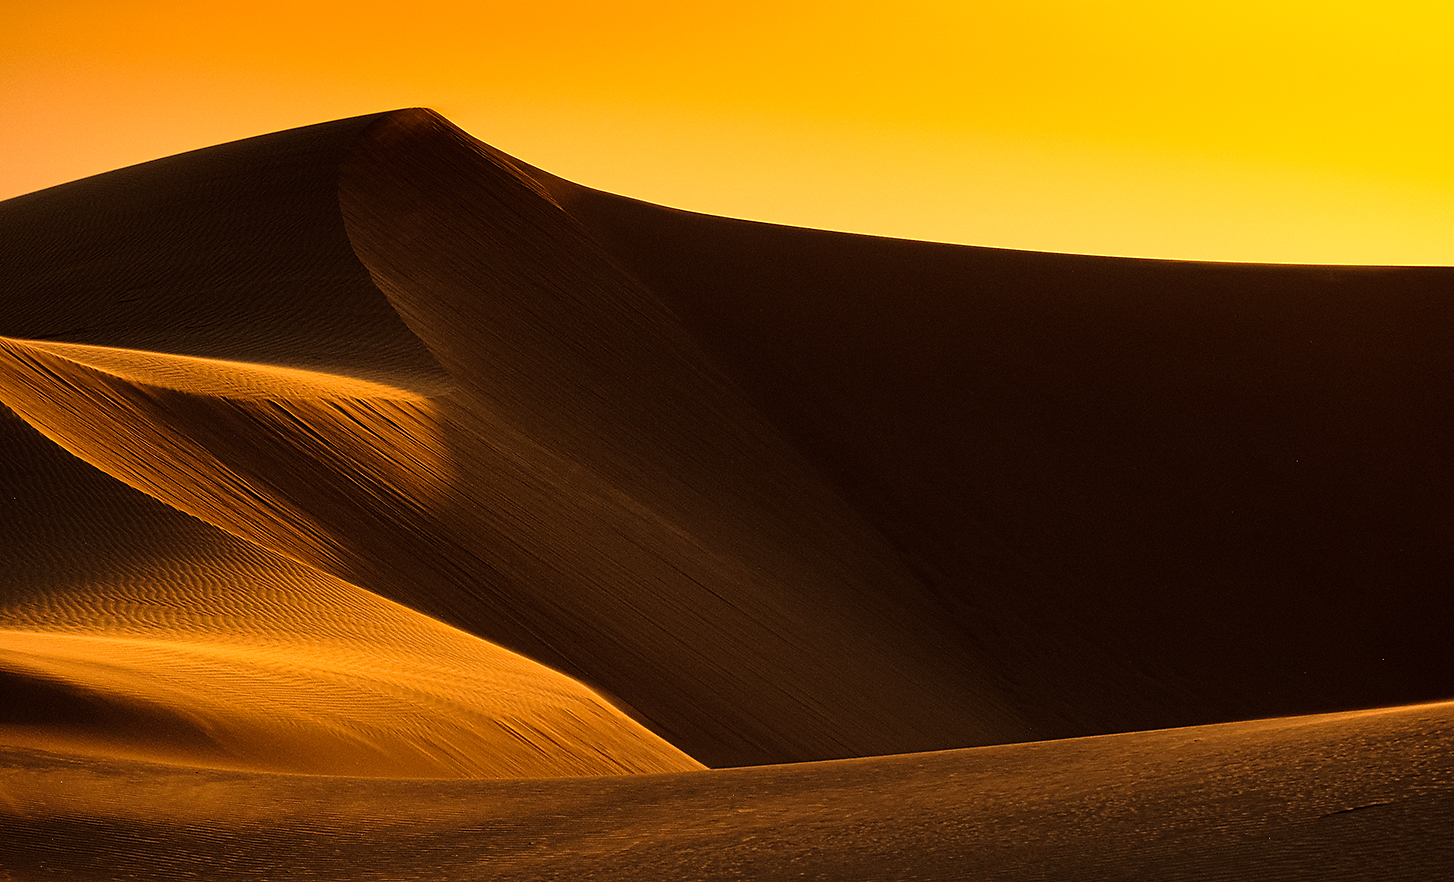 Immagine che mostra dune di sabbia in un deserto